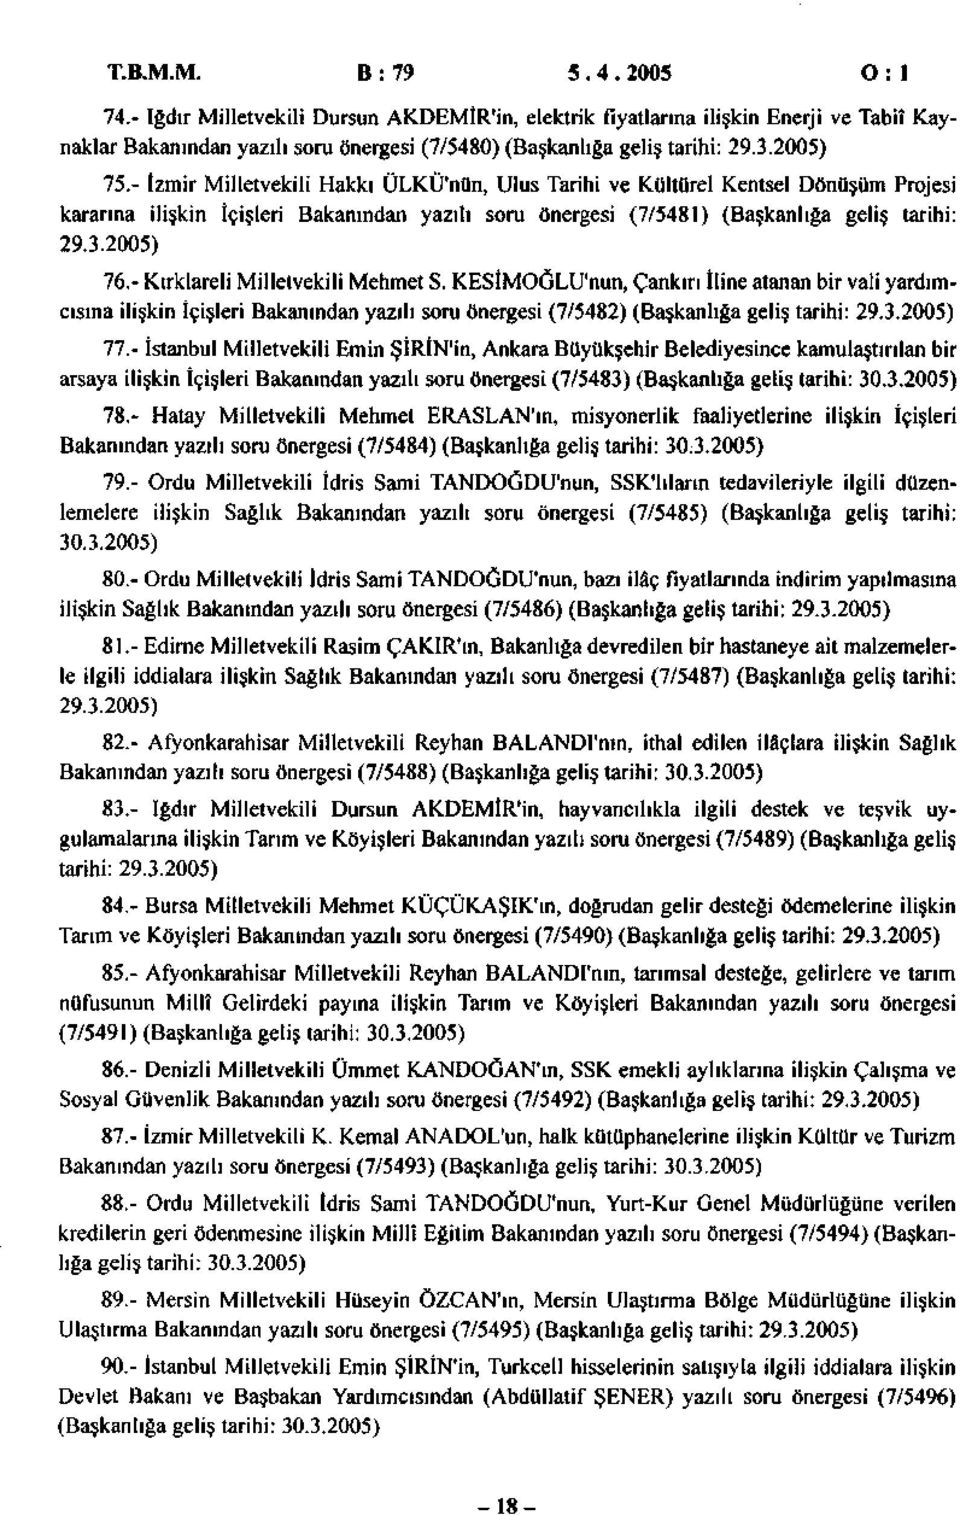 - Kırklareli Milletvekili Mehmet S. KESİMOĞLU'nun, Çankırı İline atanan bir vali yardımcısına ilişkin İçişleri Bakanından yazılı soru önergesi (7/548) (Başkanlığa geliş tarihi: 9.3.005) 77.